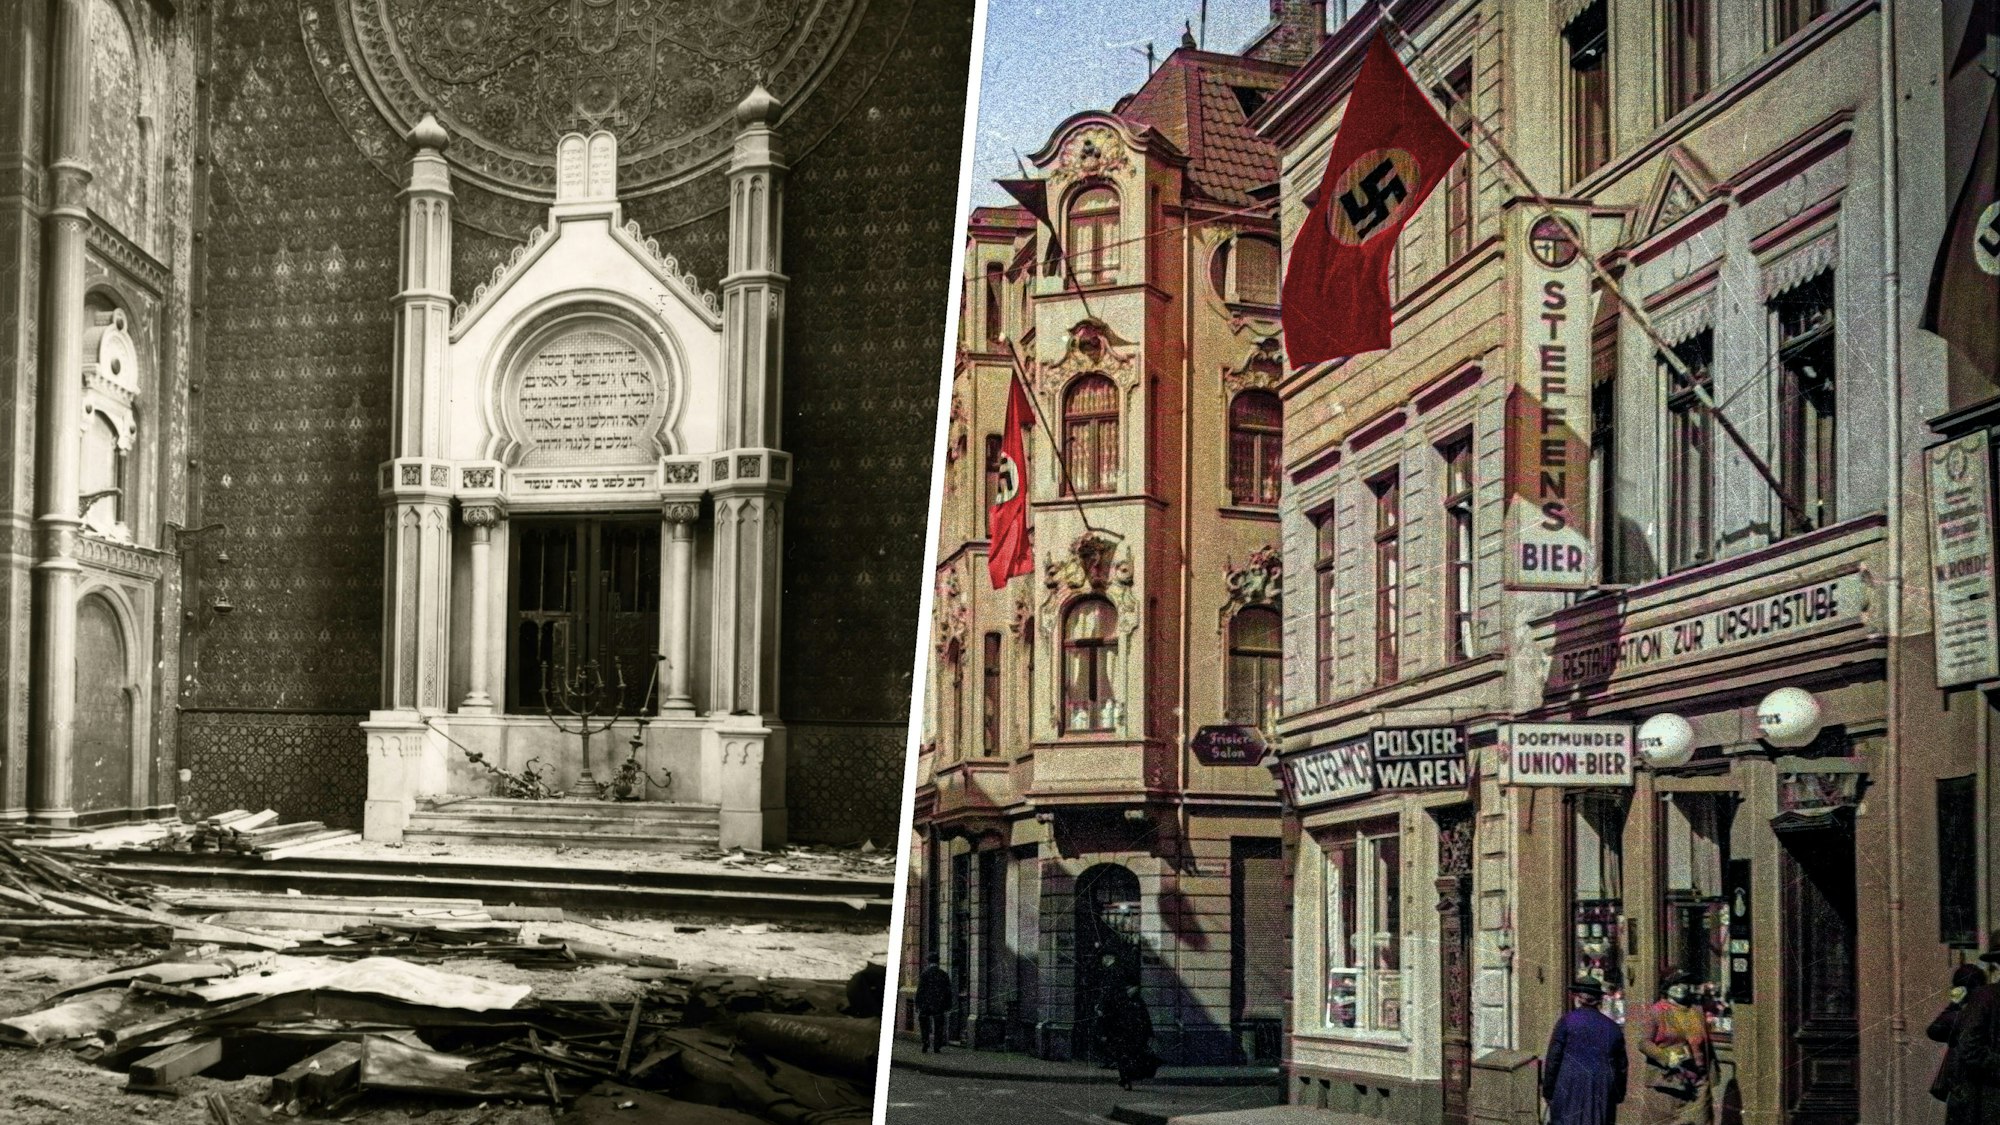 Linkes Foto: Historische Fotos des zerstörten Innenraums der Synagoge. Verbrannte Holzbalken liegen auf dem Boden. Rechts Foto: Gebäude im Stil der Gründerzeit, vor den Fassaden wehen Hakenkreuz-Fahnen.